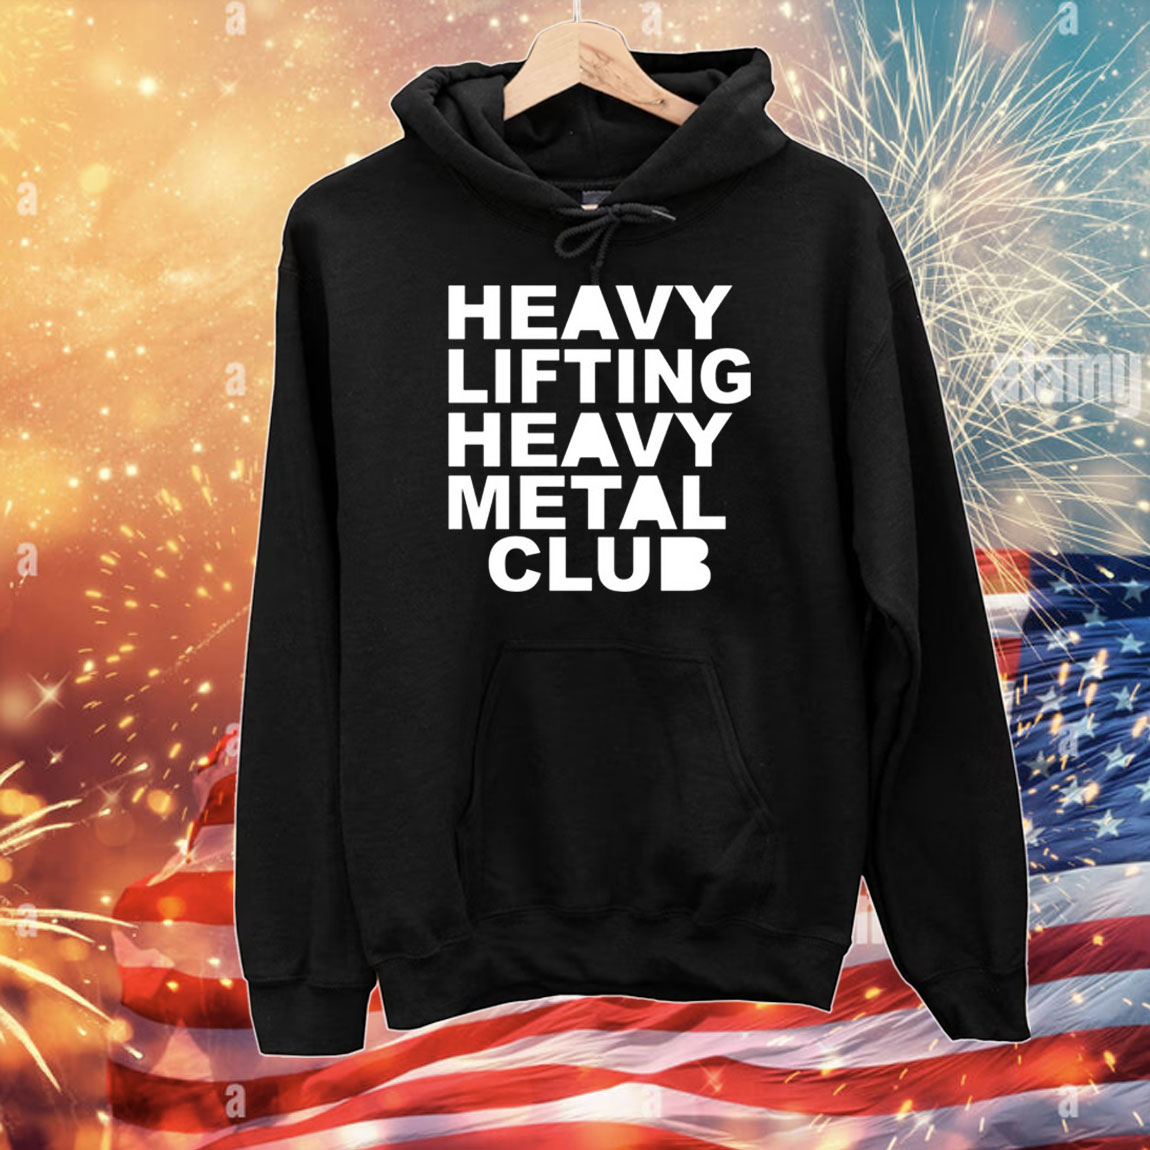 Heavy Lifting Heavy Metal Club Tee Shirts